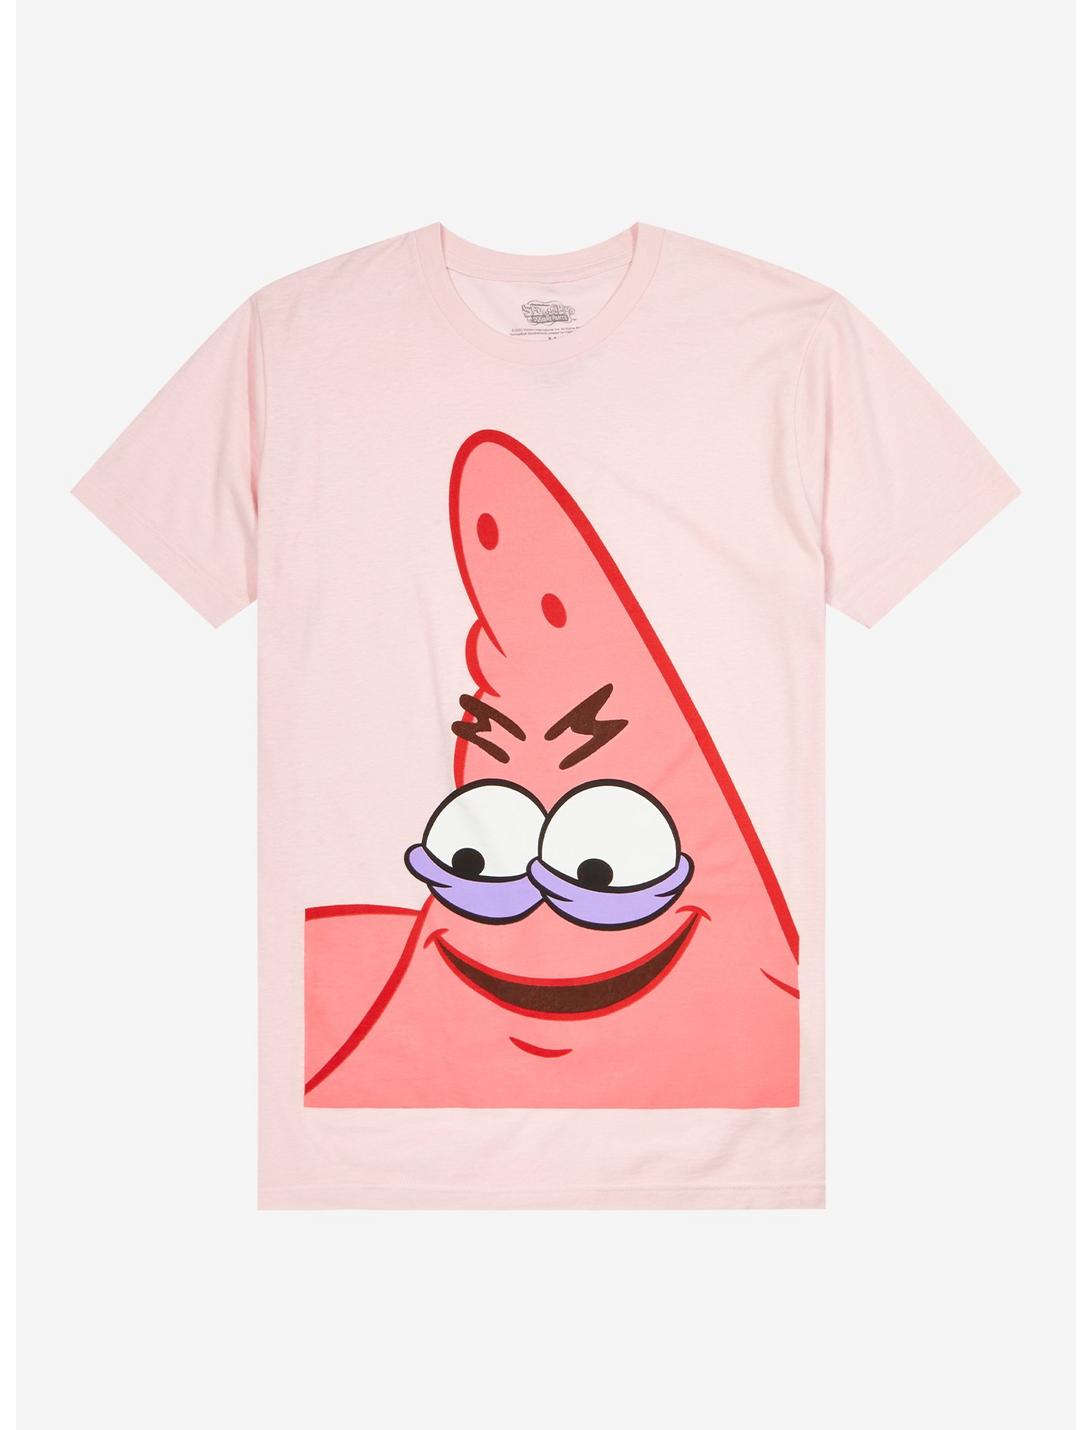 SpongeBob SquarePants Patrick Meme T-Shirt, PINK, hi-res